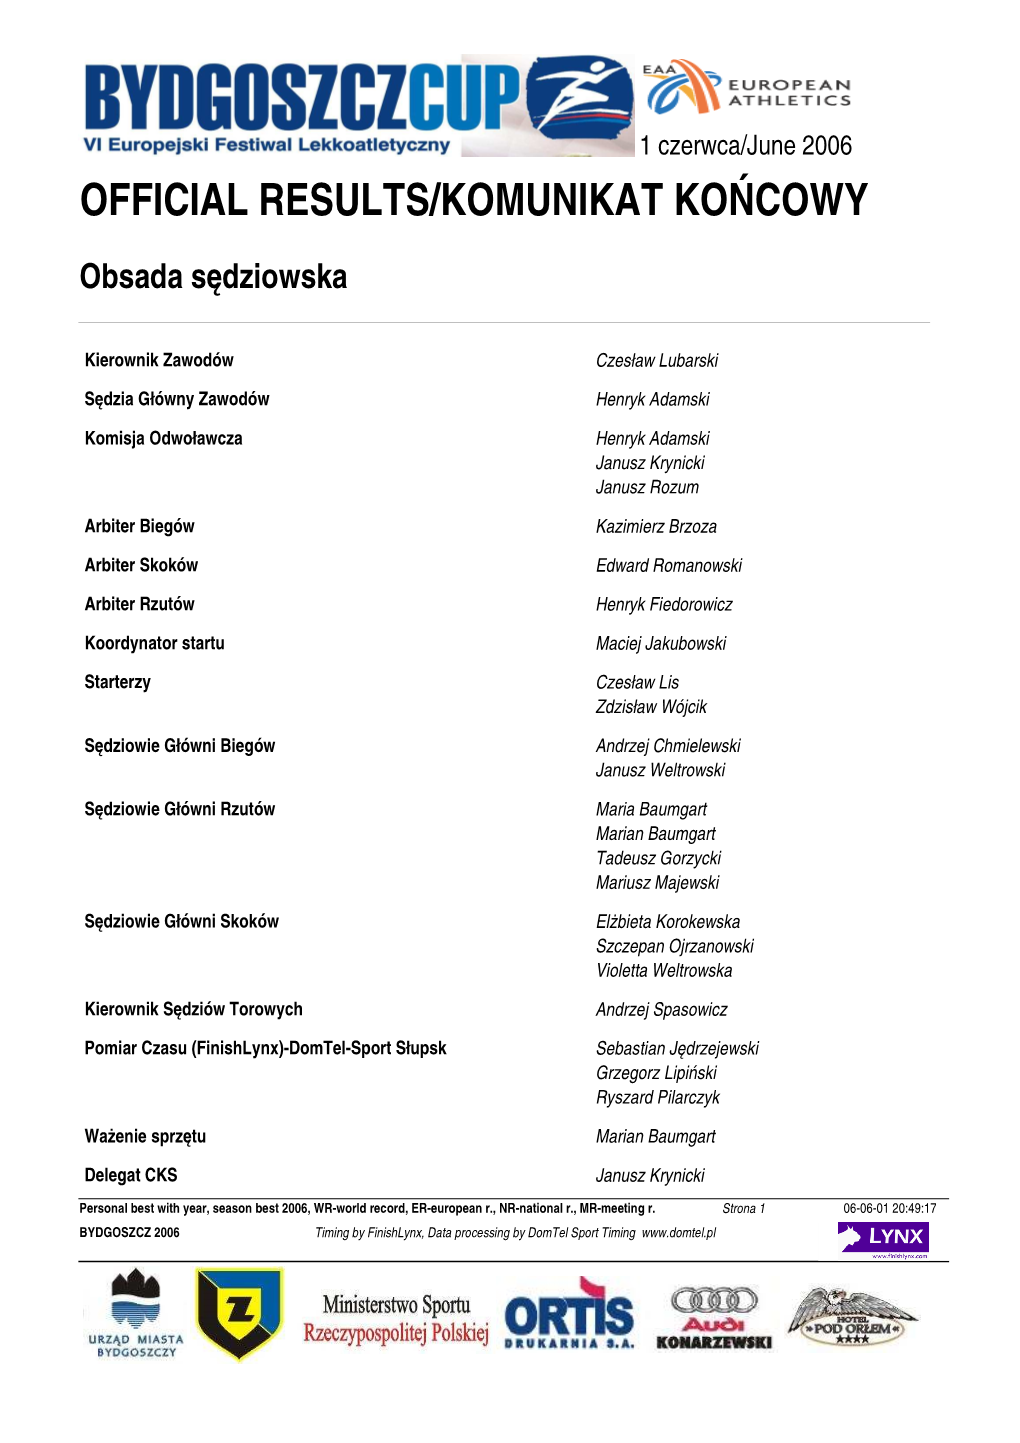 Official Results/Komunikat Końcowy